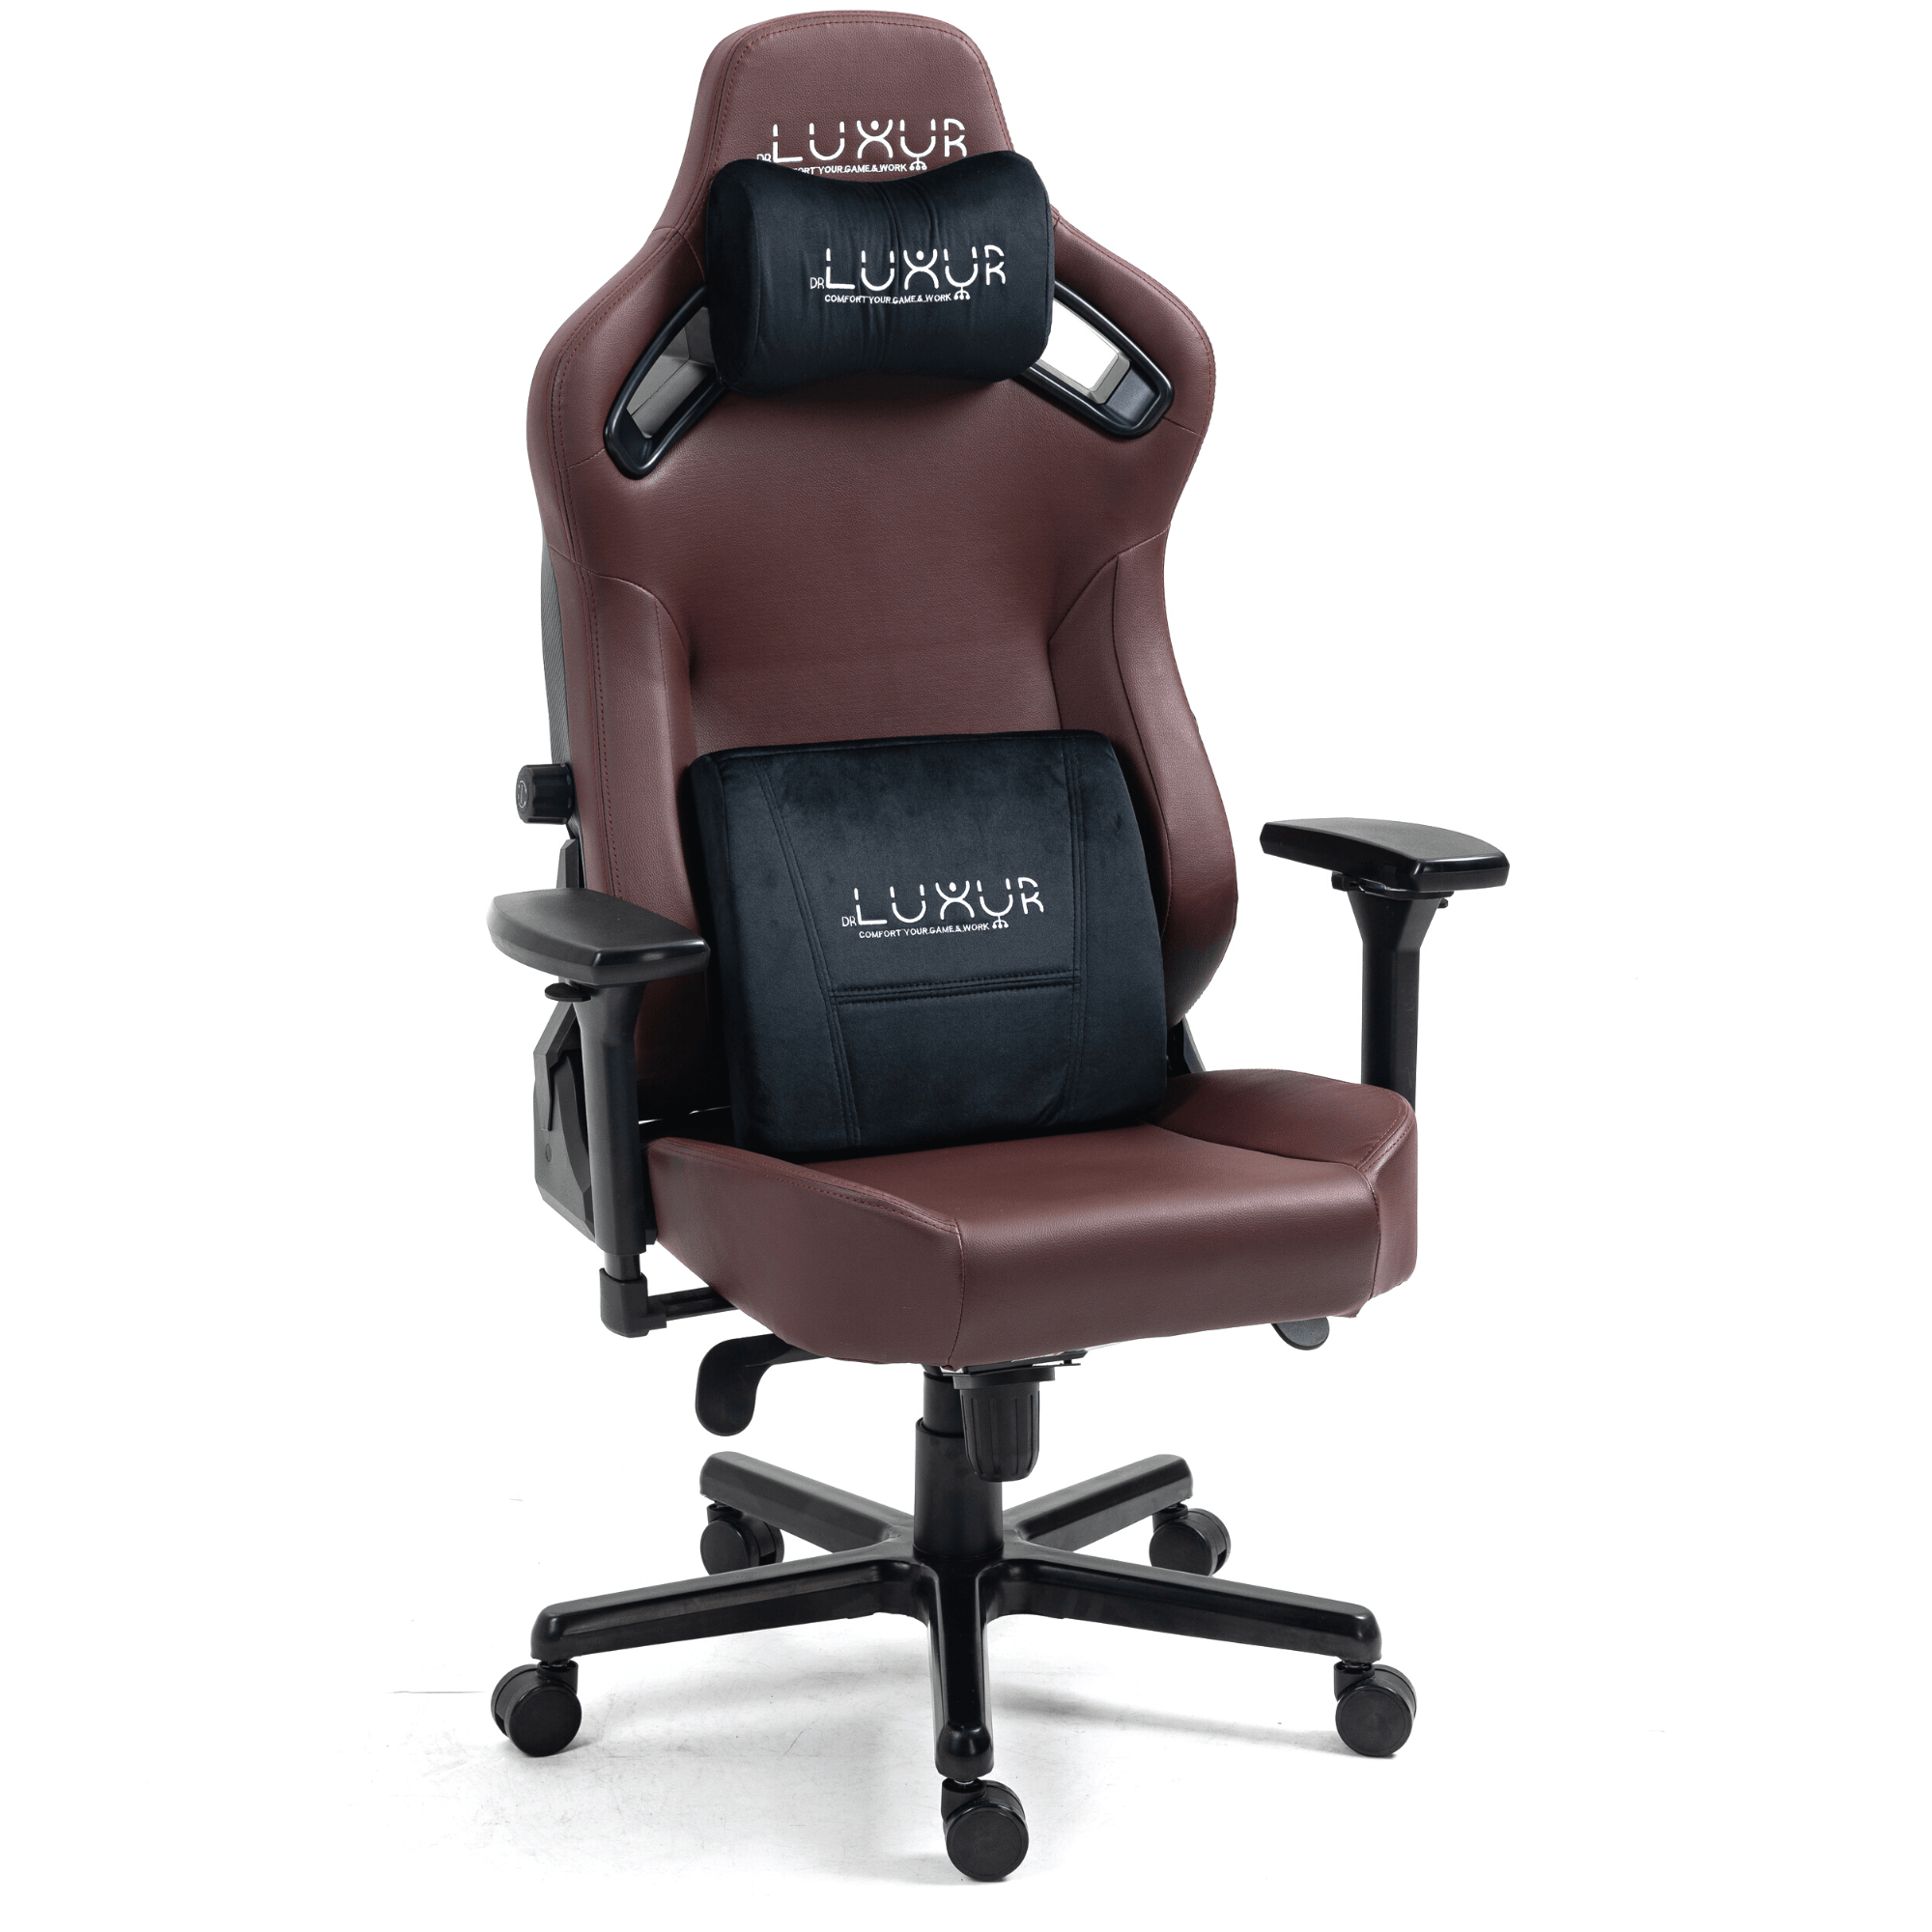 Drluxur CLUTCH Gaming chair - DrLuxur